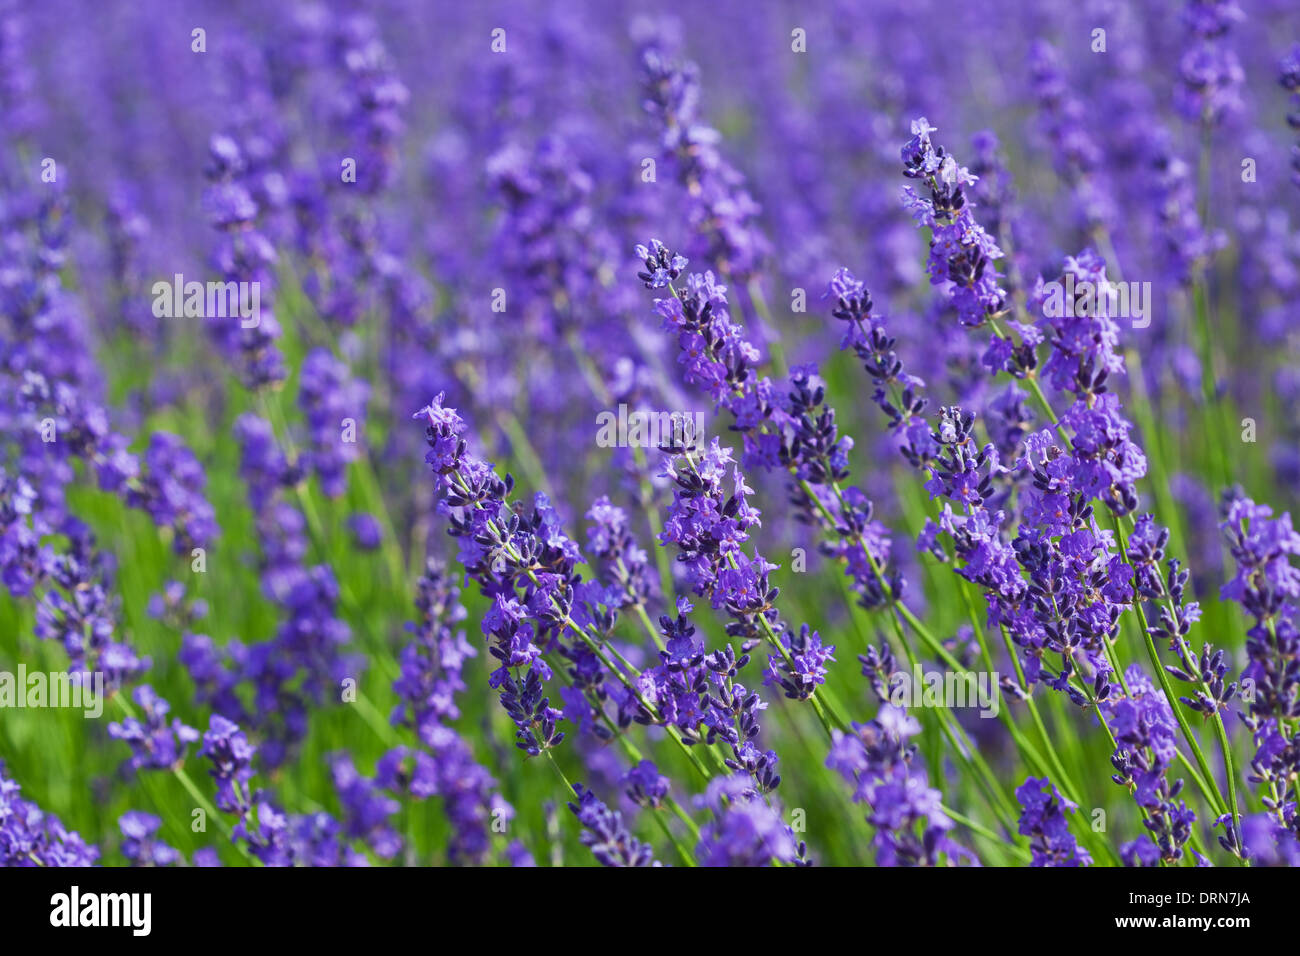 Lavender flower Stock Photo